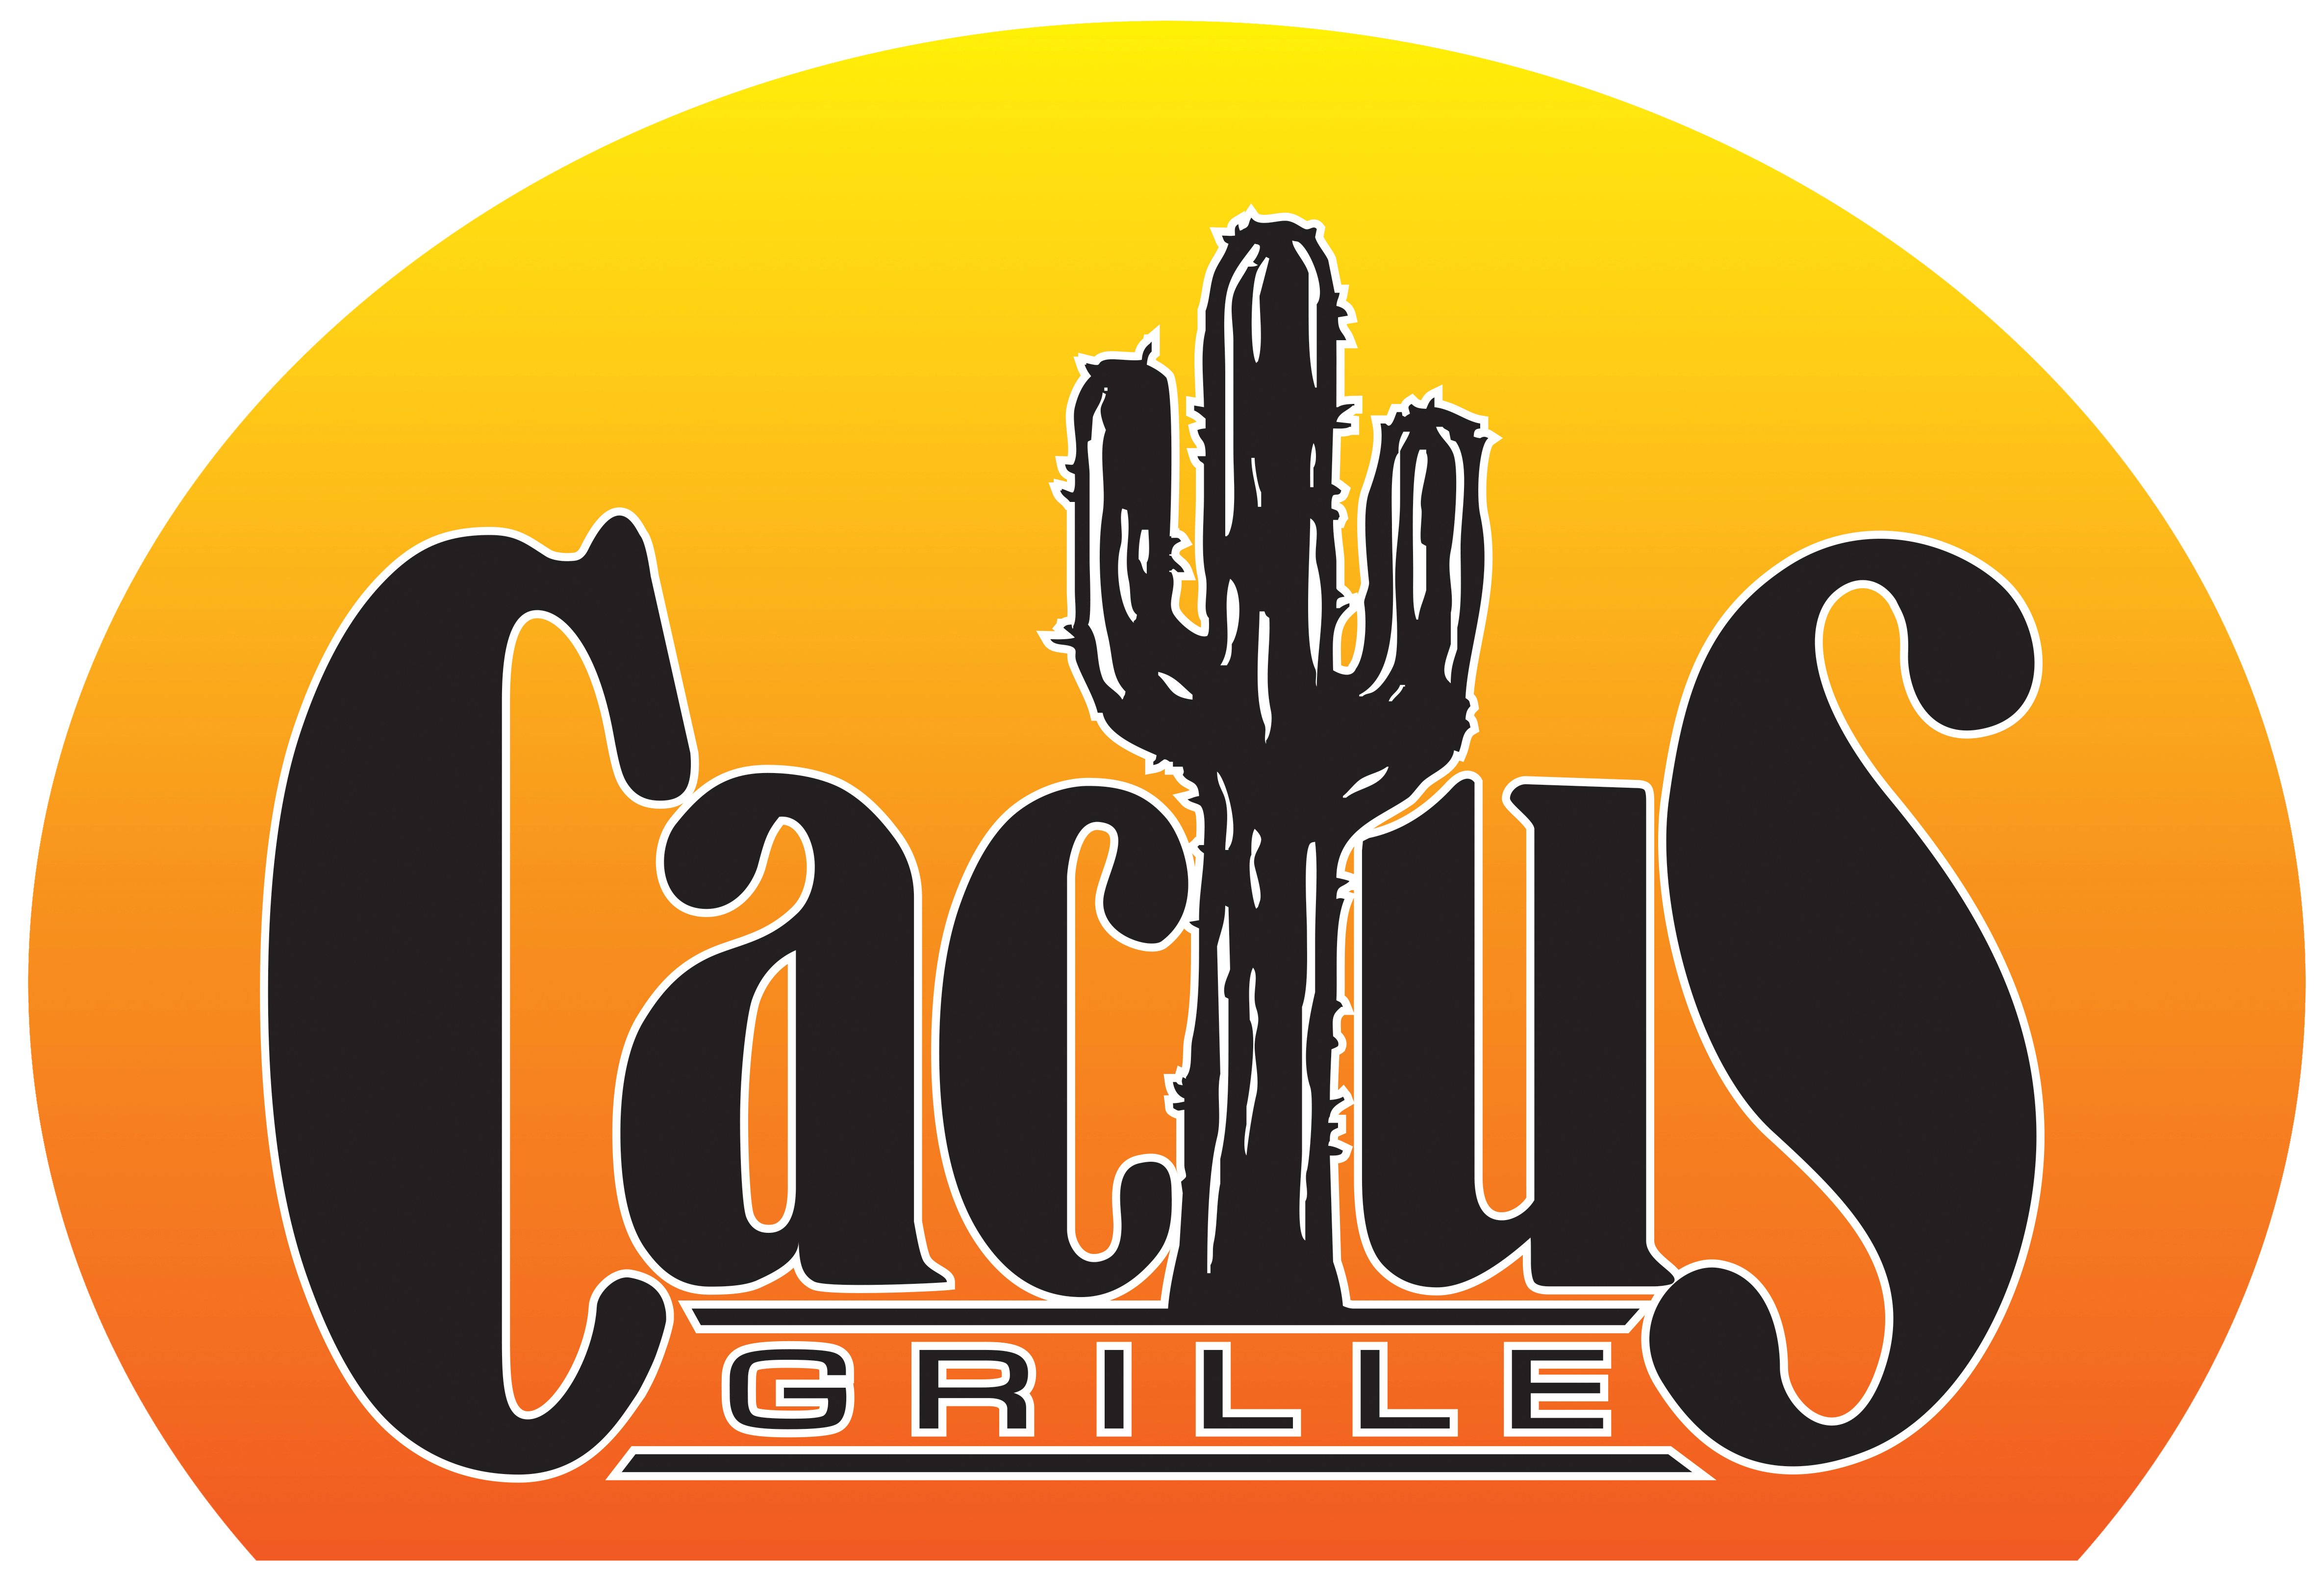 Cactus Grille